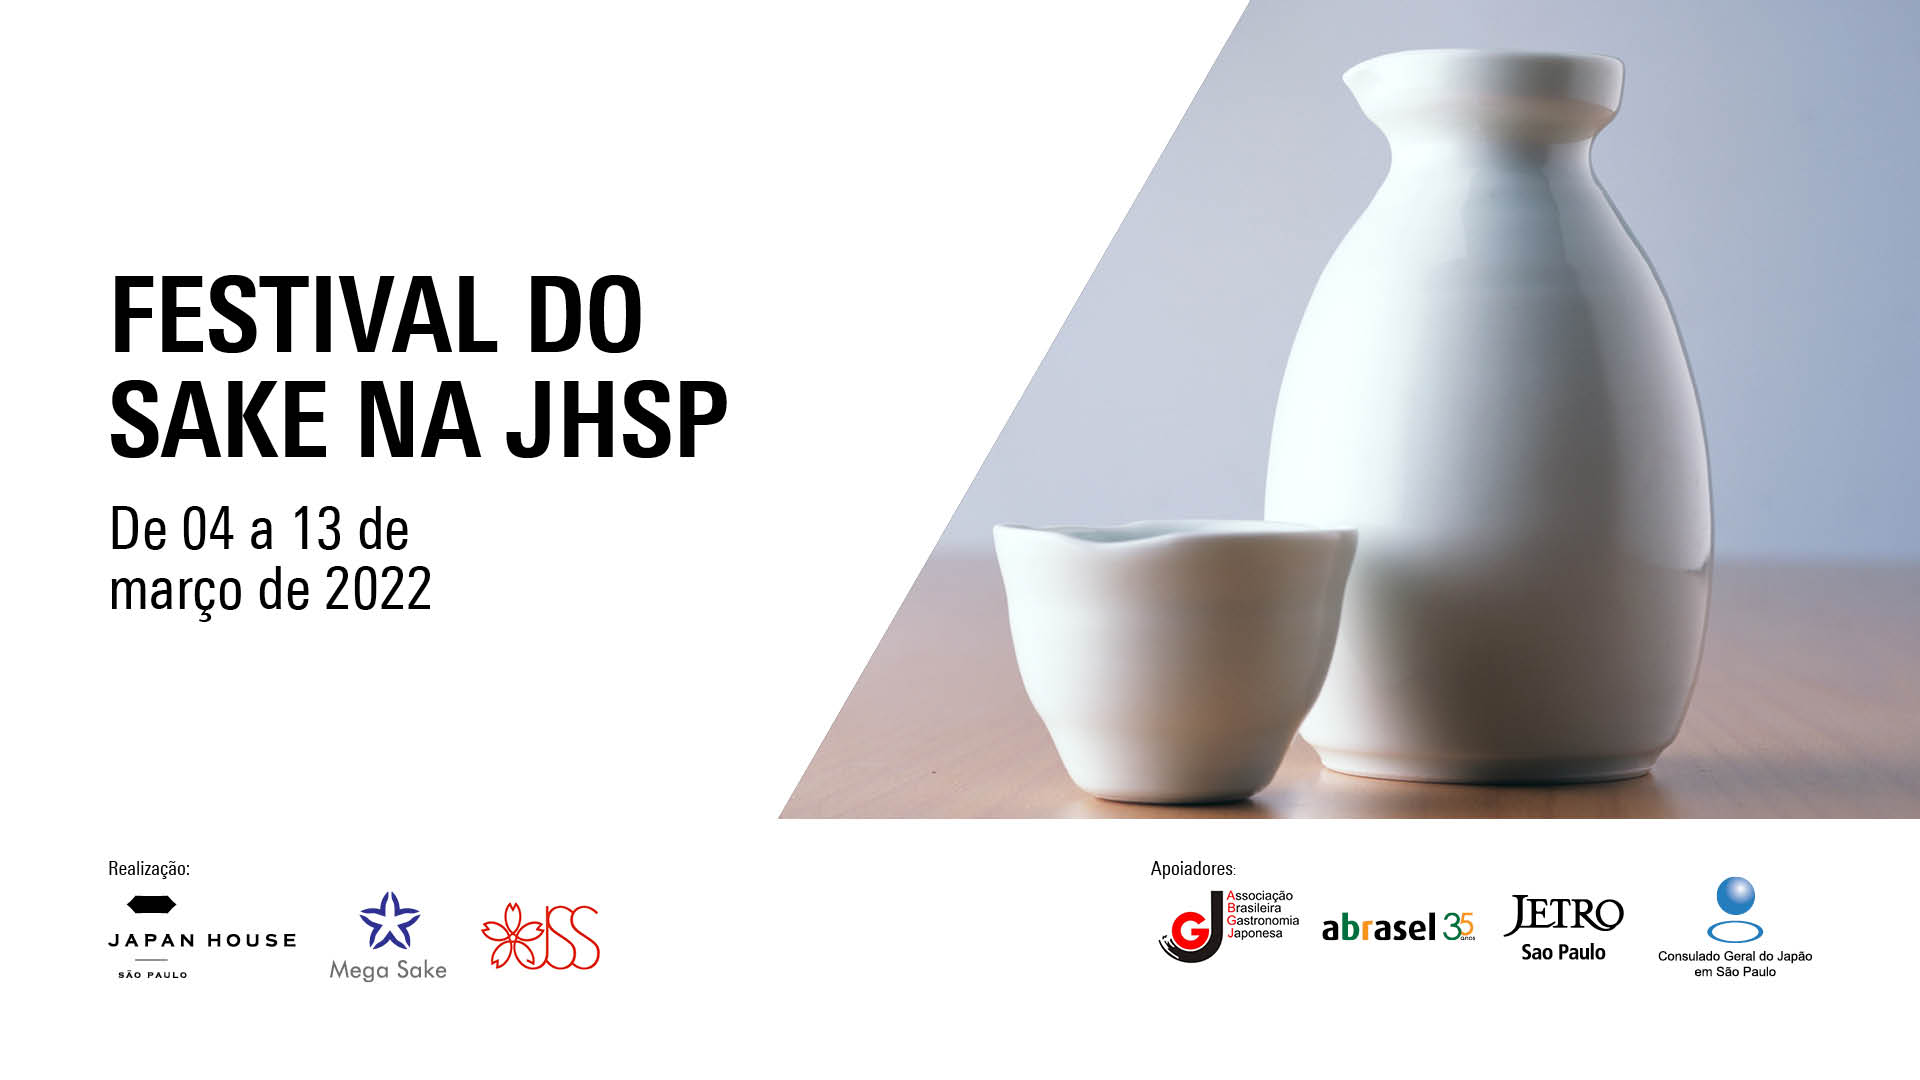 Festival do Sake na JHSP. De 04 a 13 de março de 2022.